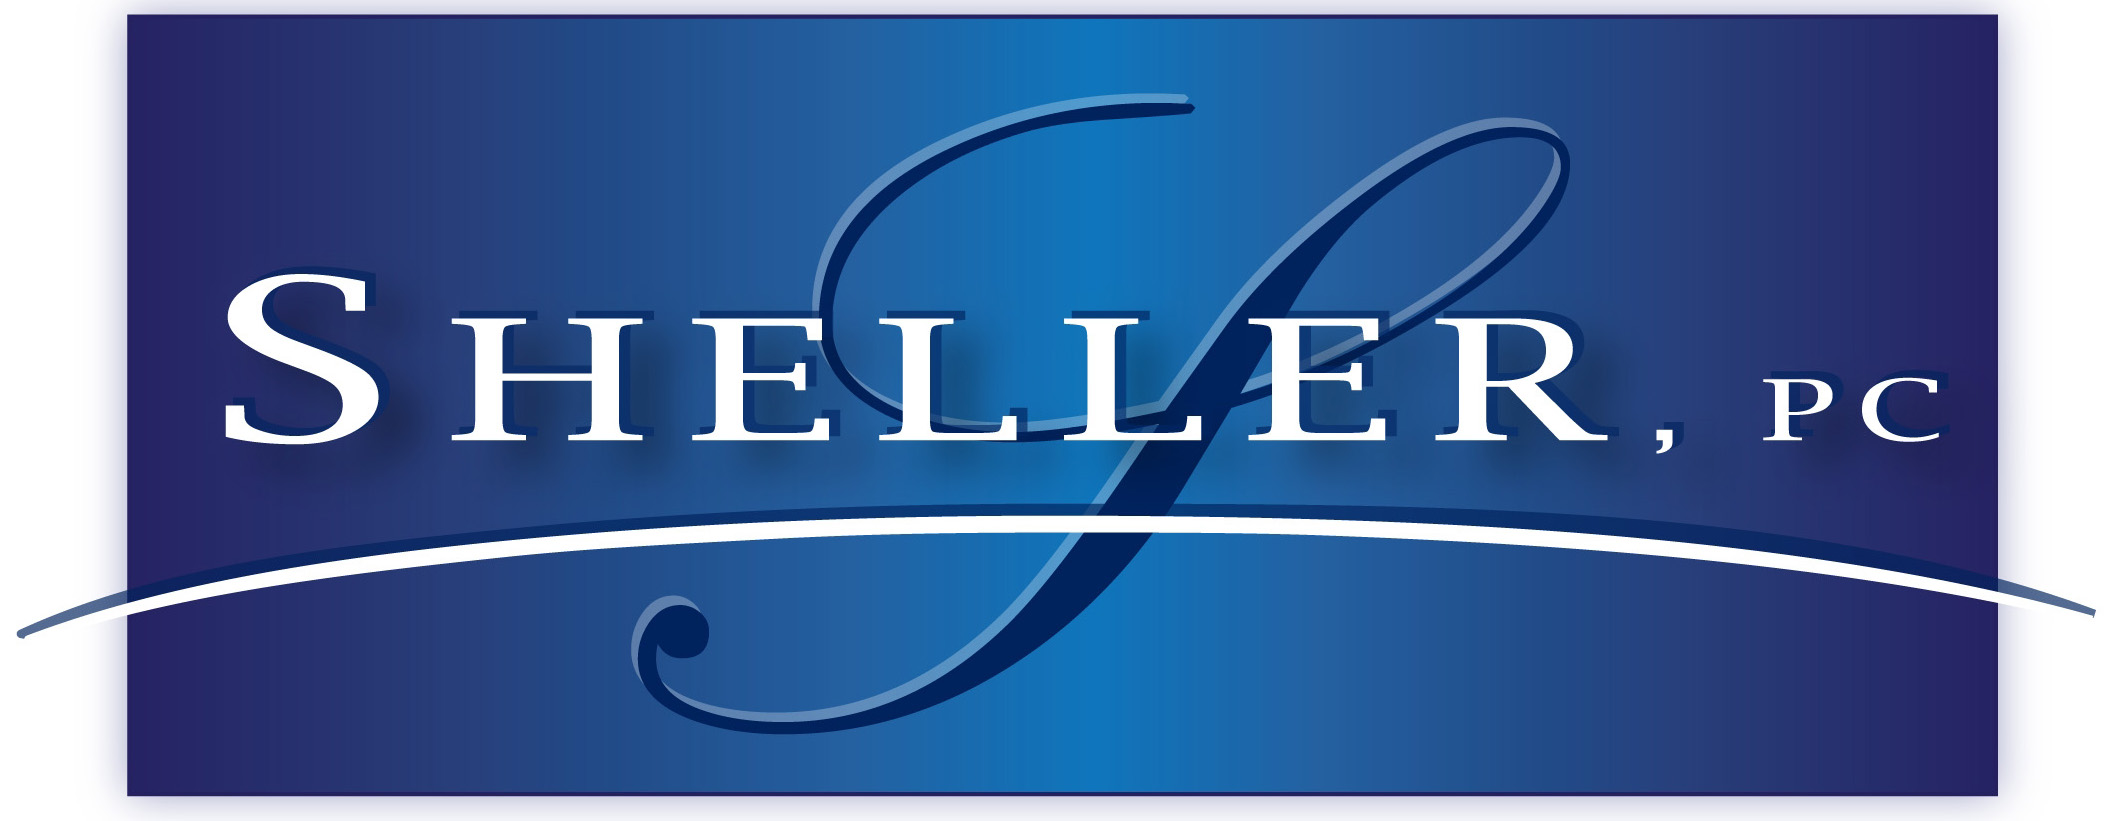 Sheller, P.C. logo